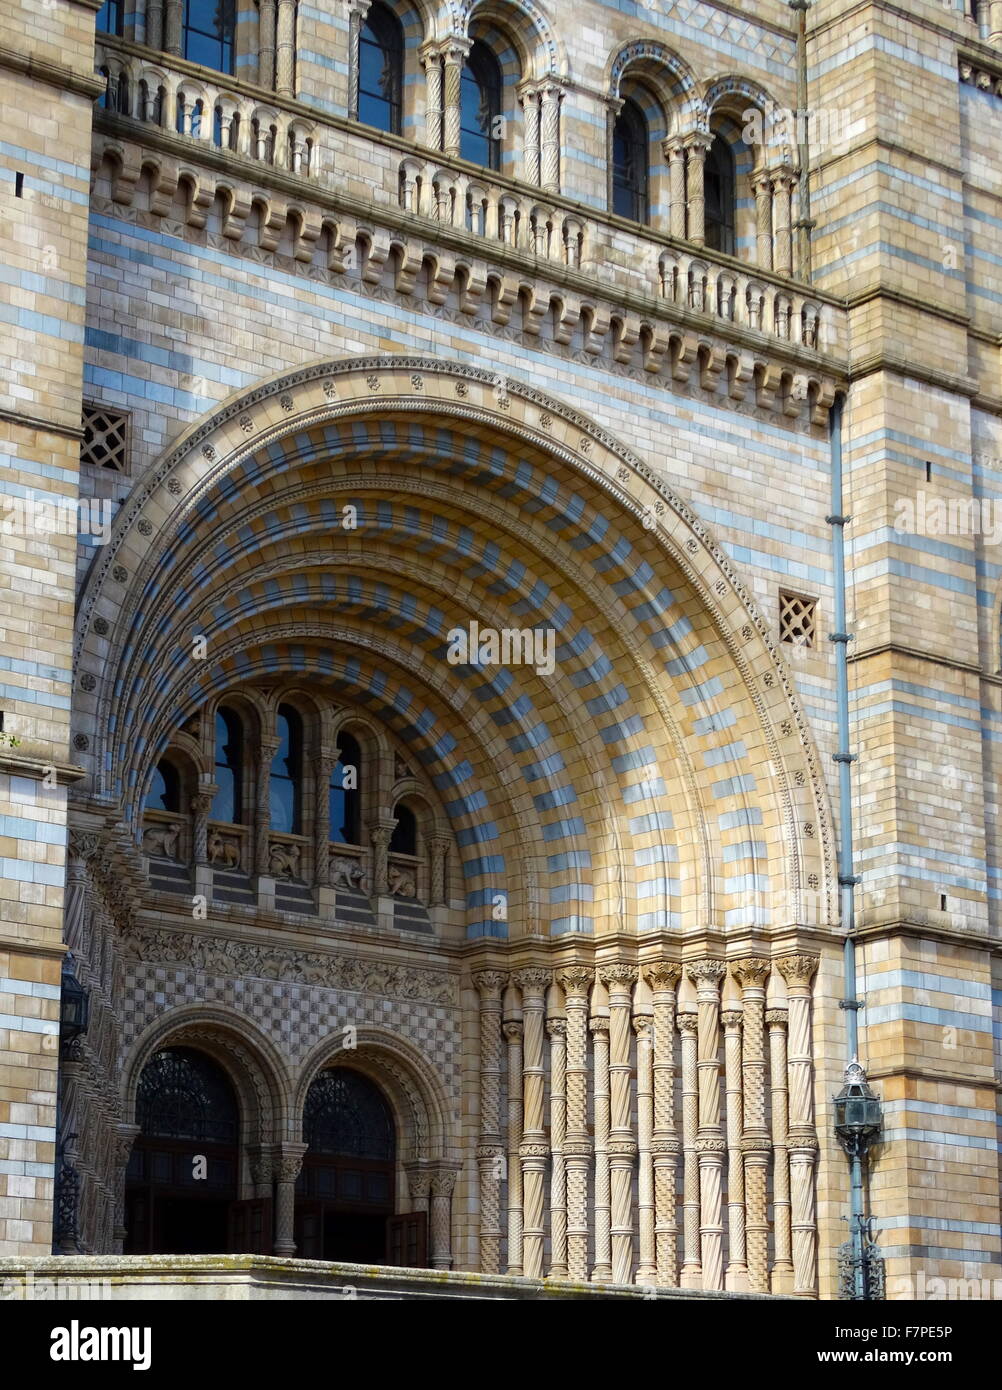 Außenseite des Natural History Museum in London, gebaut und von 1881 eröffnet. Das Gebäude verfügt über eine reich verzierte Terrakotta-Fassade von Gibbs und Canning Limited typisch für hohe viktorianische Architektur. Die Terrakotta-Formteile repräsentieren die vergangene und Gegenwart Vielfalt der Natur. Datierte 2015 Stockfoto